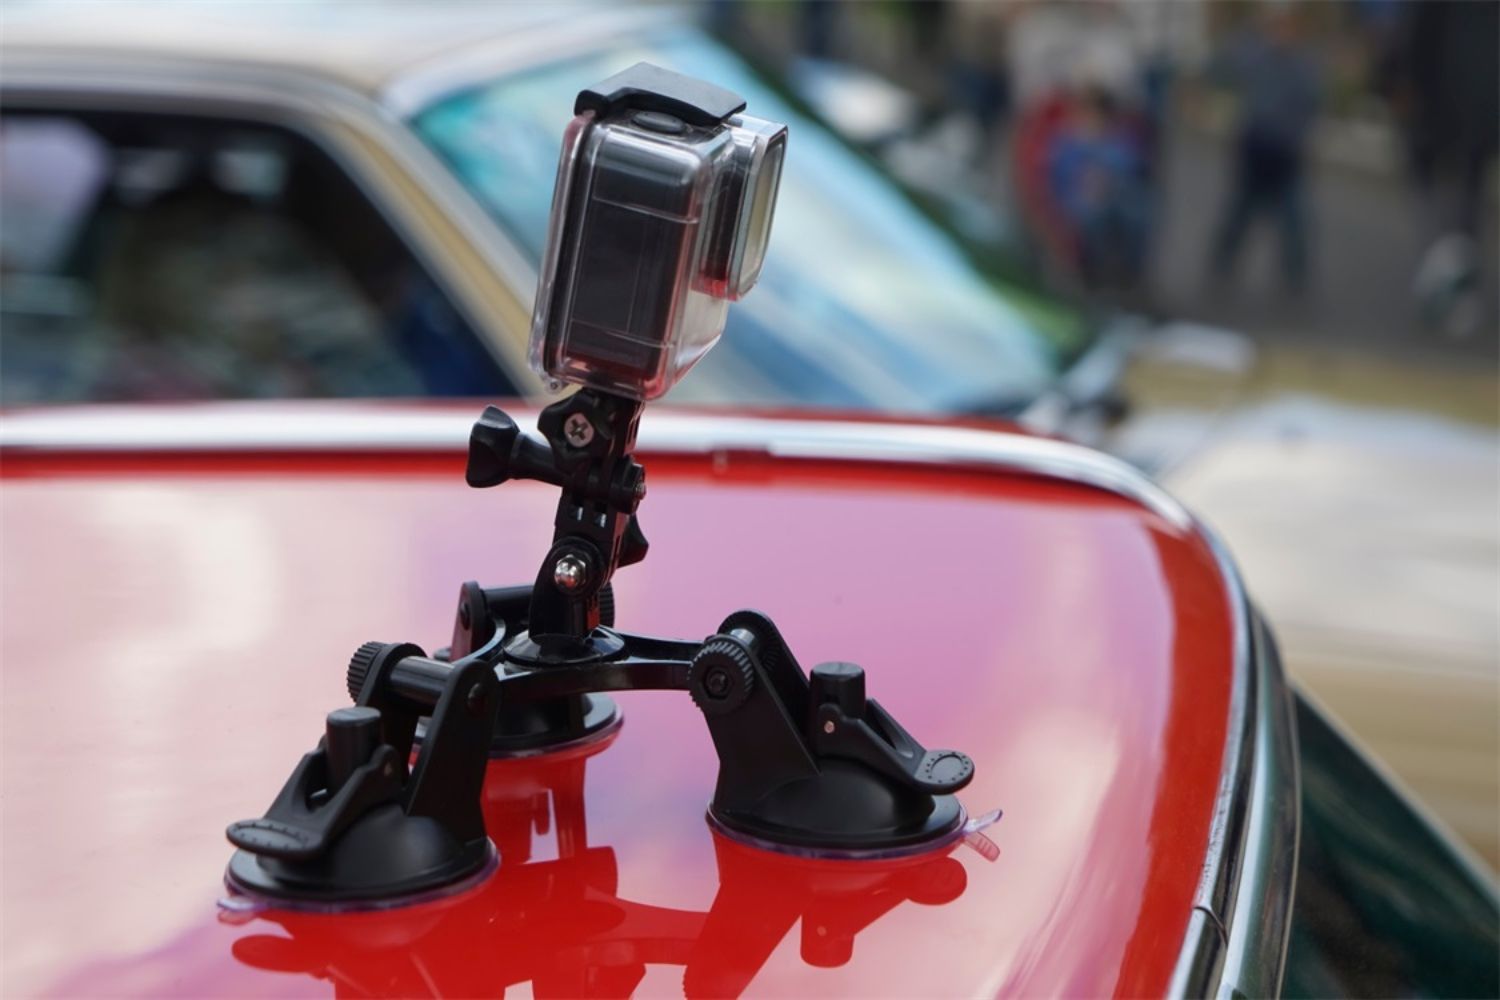 GoPro Automotive Mirror Mount - Dash Cam Mount